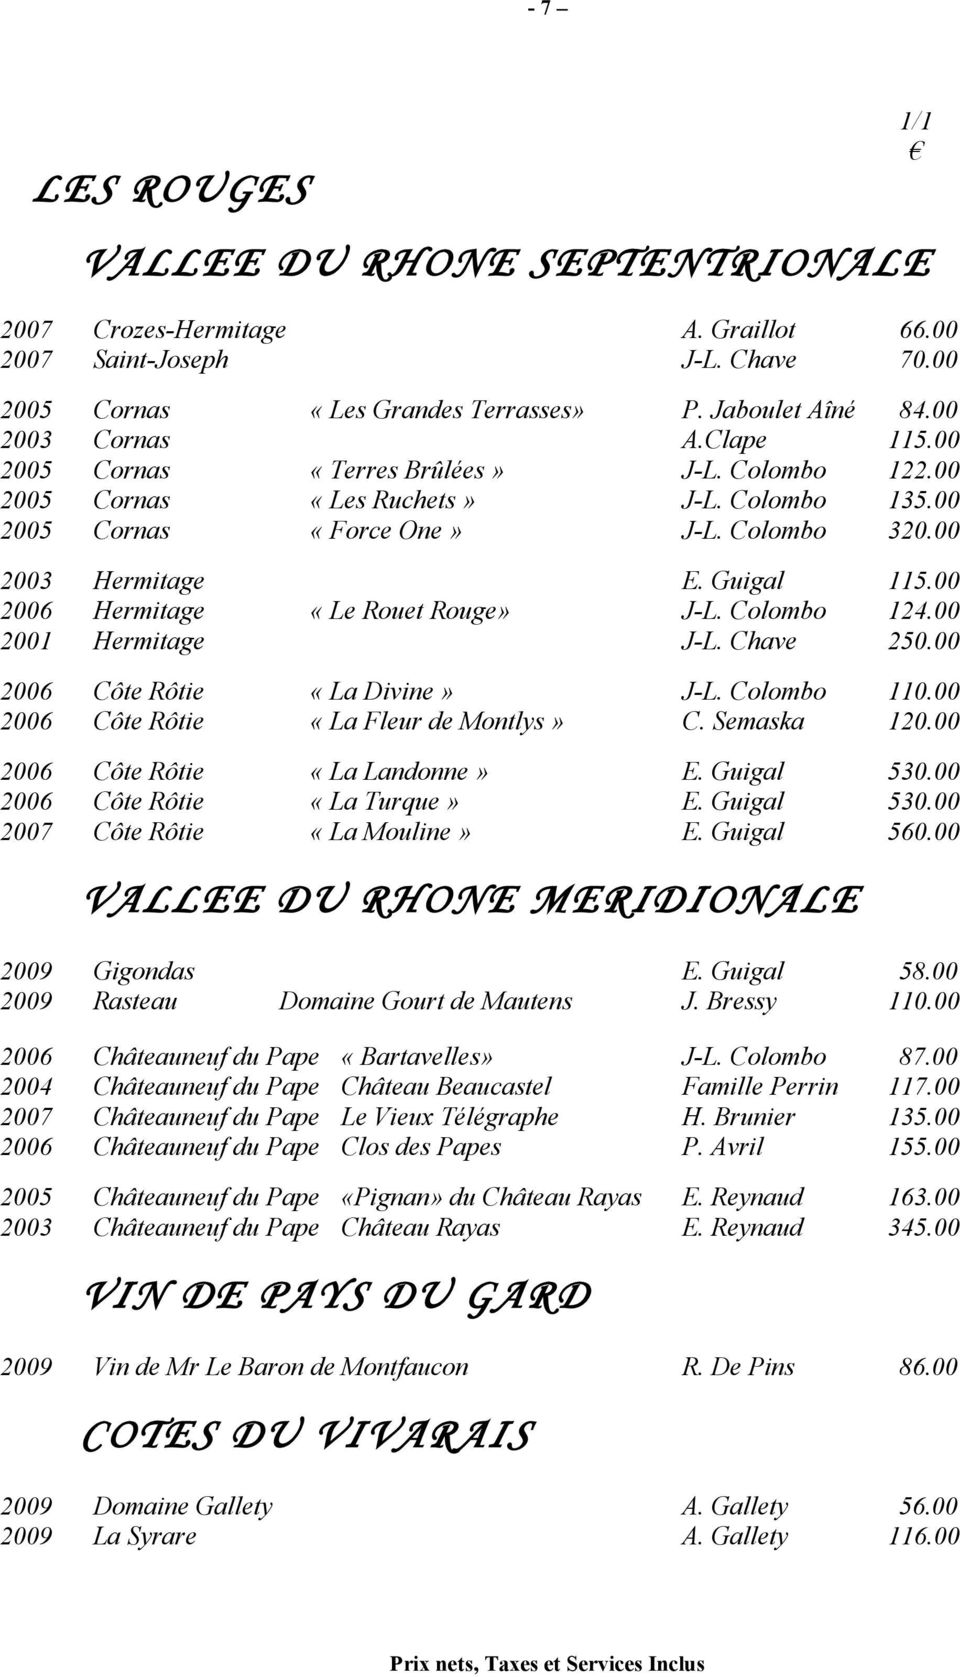 00 2006 Hermitage «Le Rouet Rouge» J-L. Colombo 124.00 2001 Hermitage J-L. Chave 250.00 2006 Côte Rôtie «La Divine» J-L. Colombo 110.00 2006 Côte Rôtie «La Fleur de Montlys» C. Semaska 120.